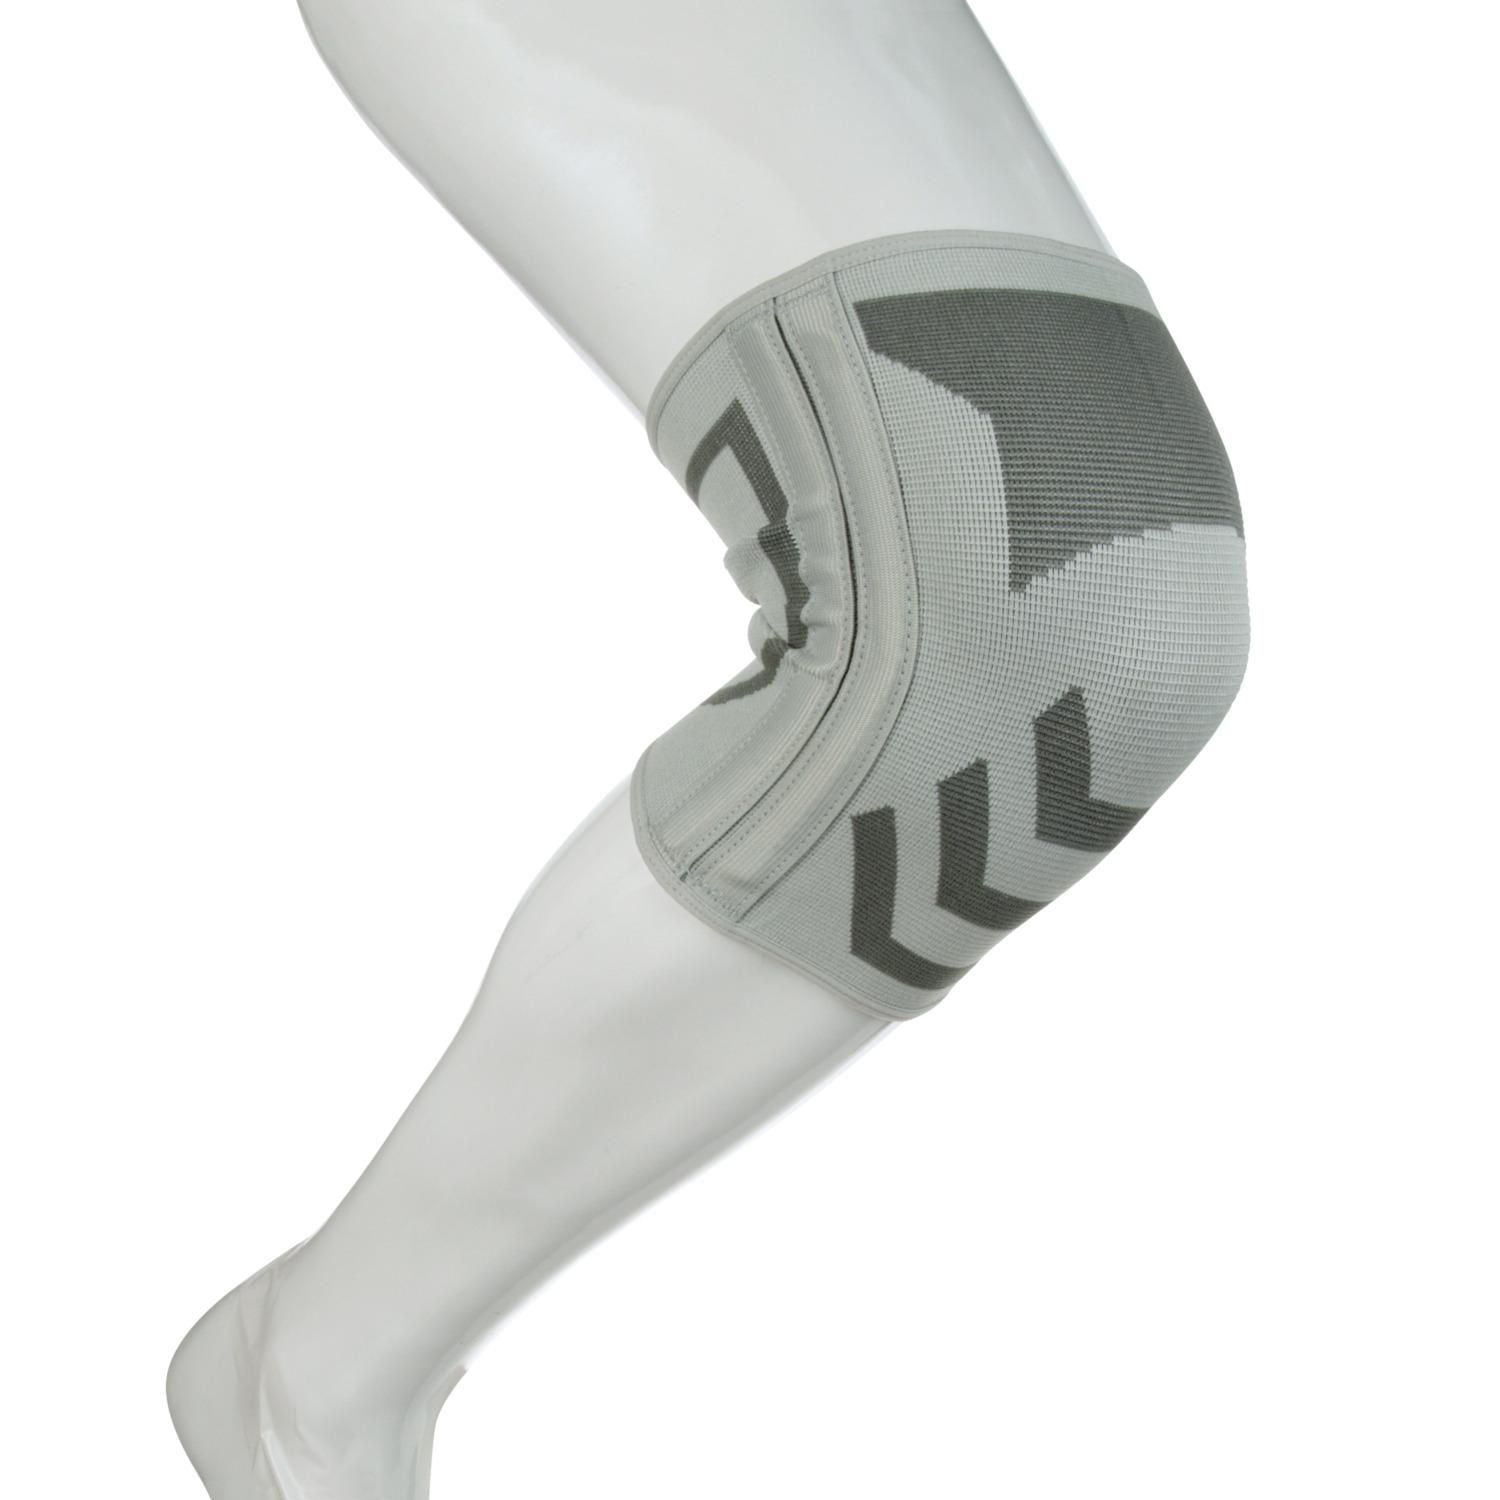 ACE Brand Knee Brace w/ Dual Side Stabilizers, Black